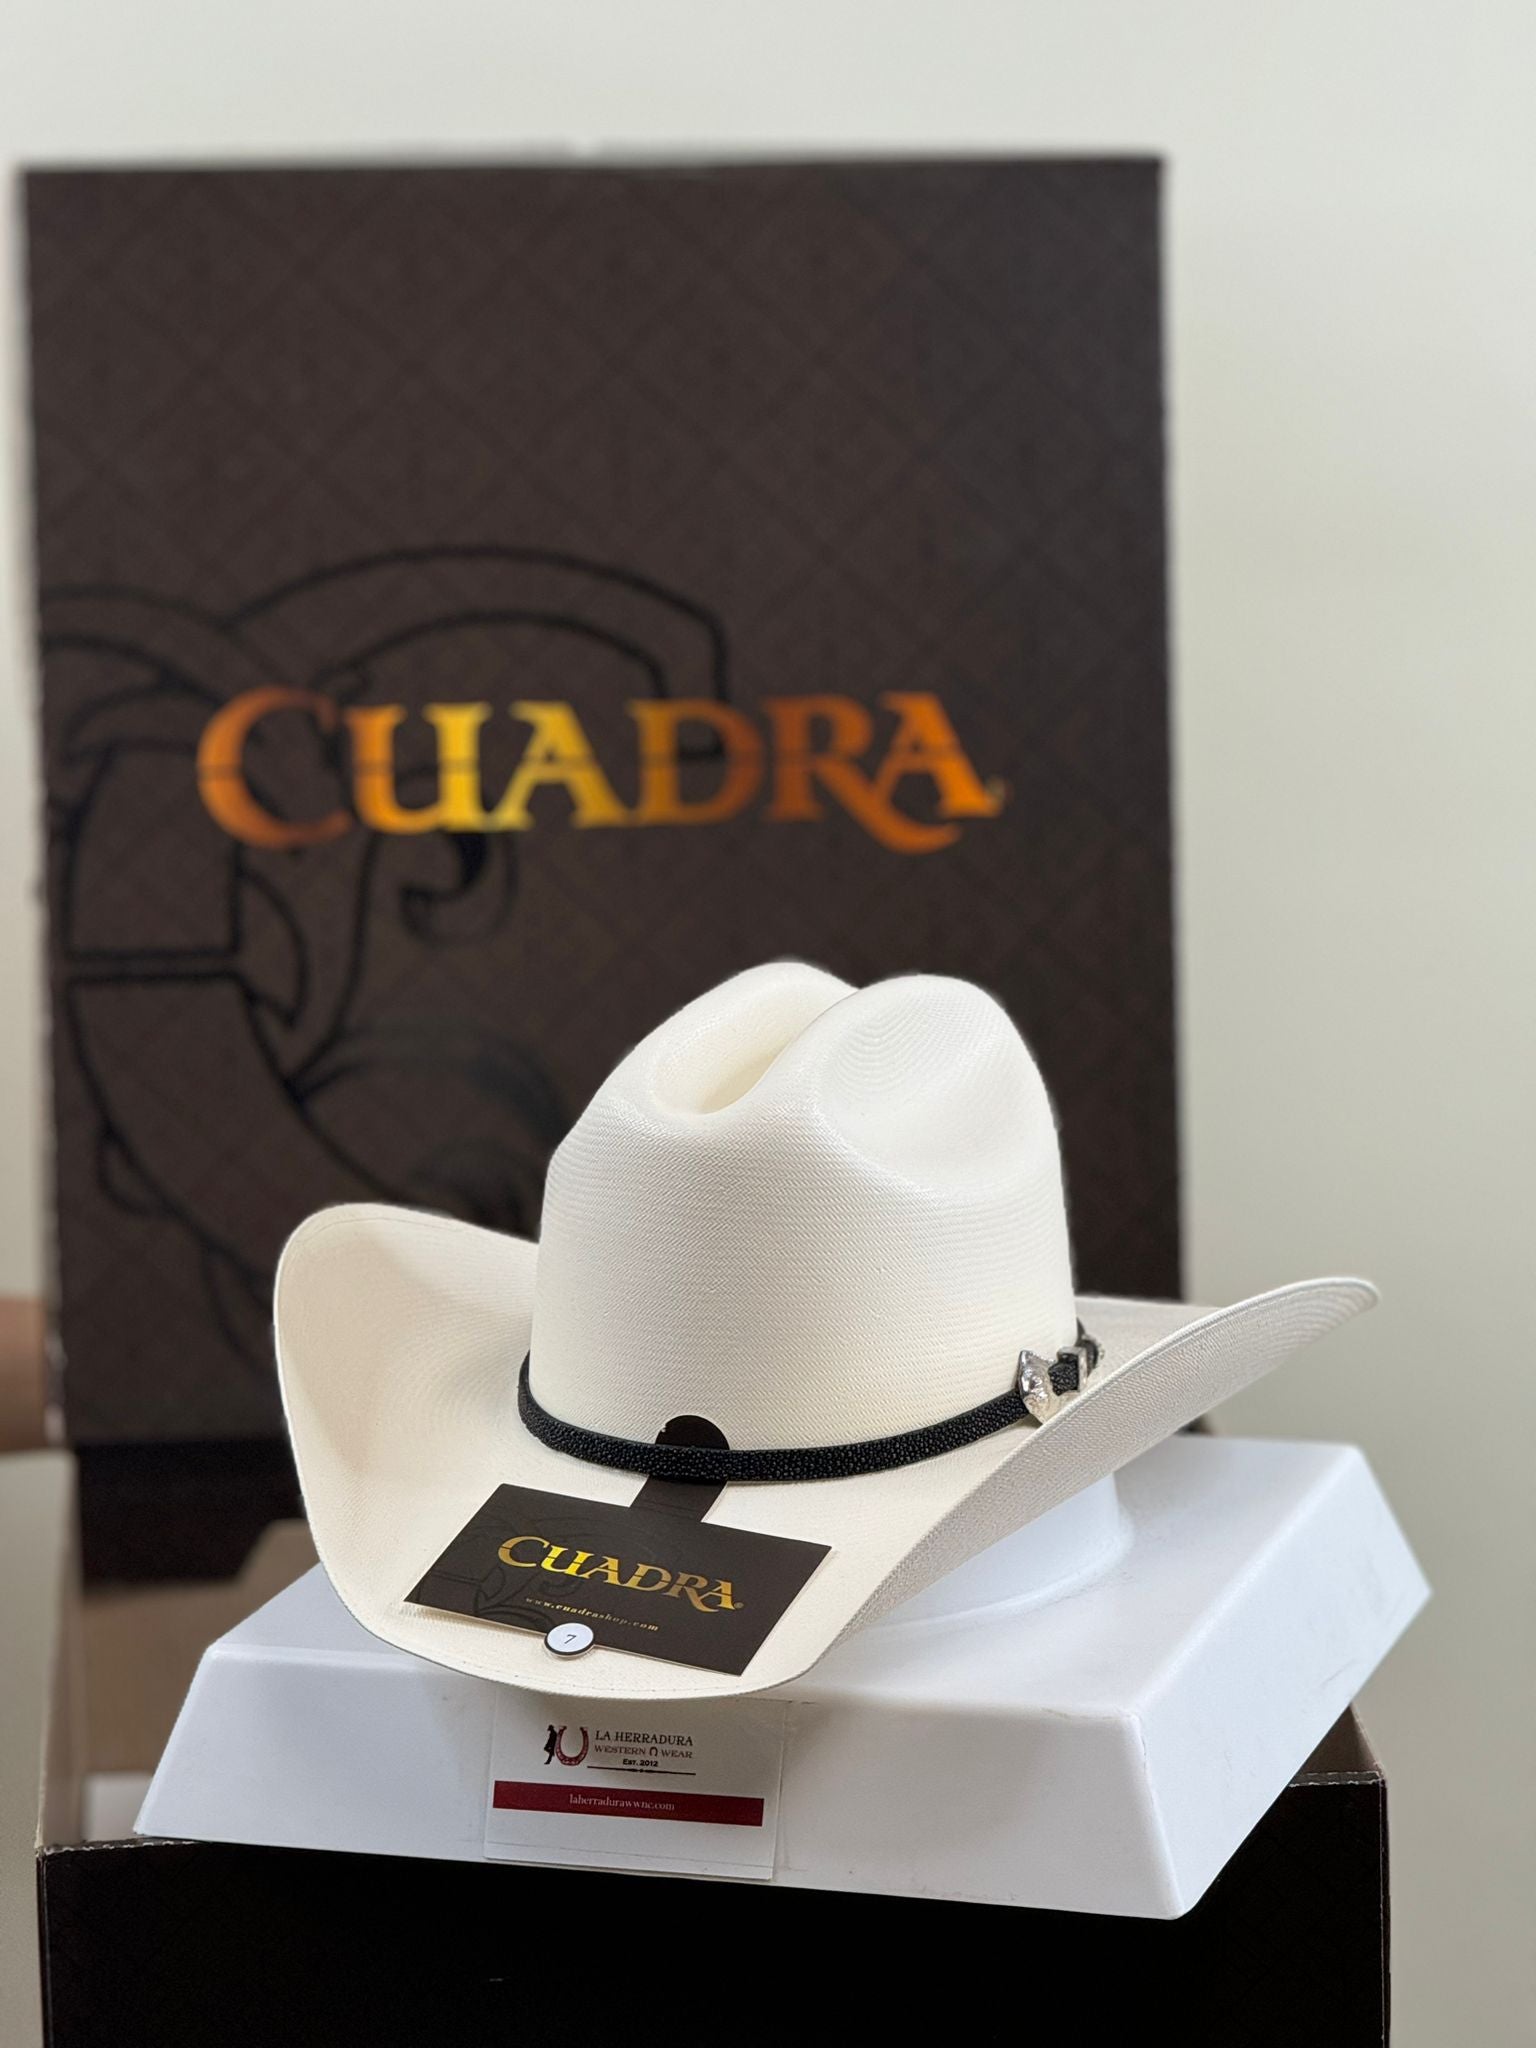 CUADRA 500X STINGRAY IVORY STRAW HAT